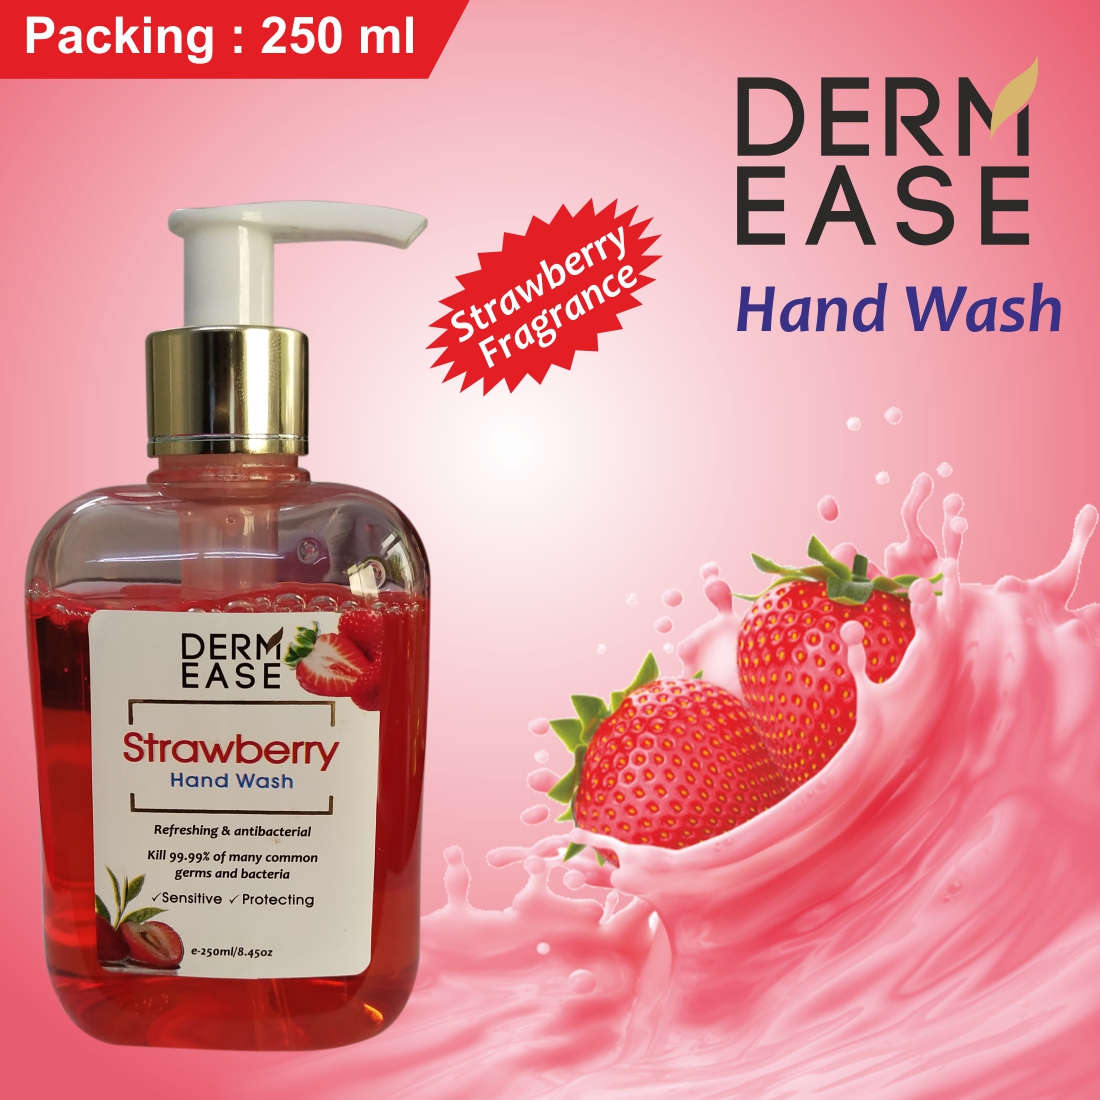 DERM EASE Strawberry Hand Wash